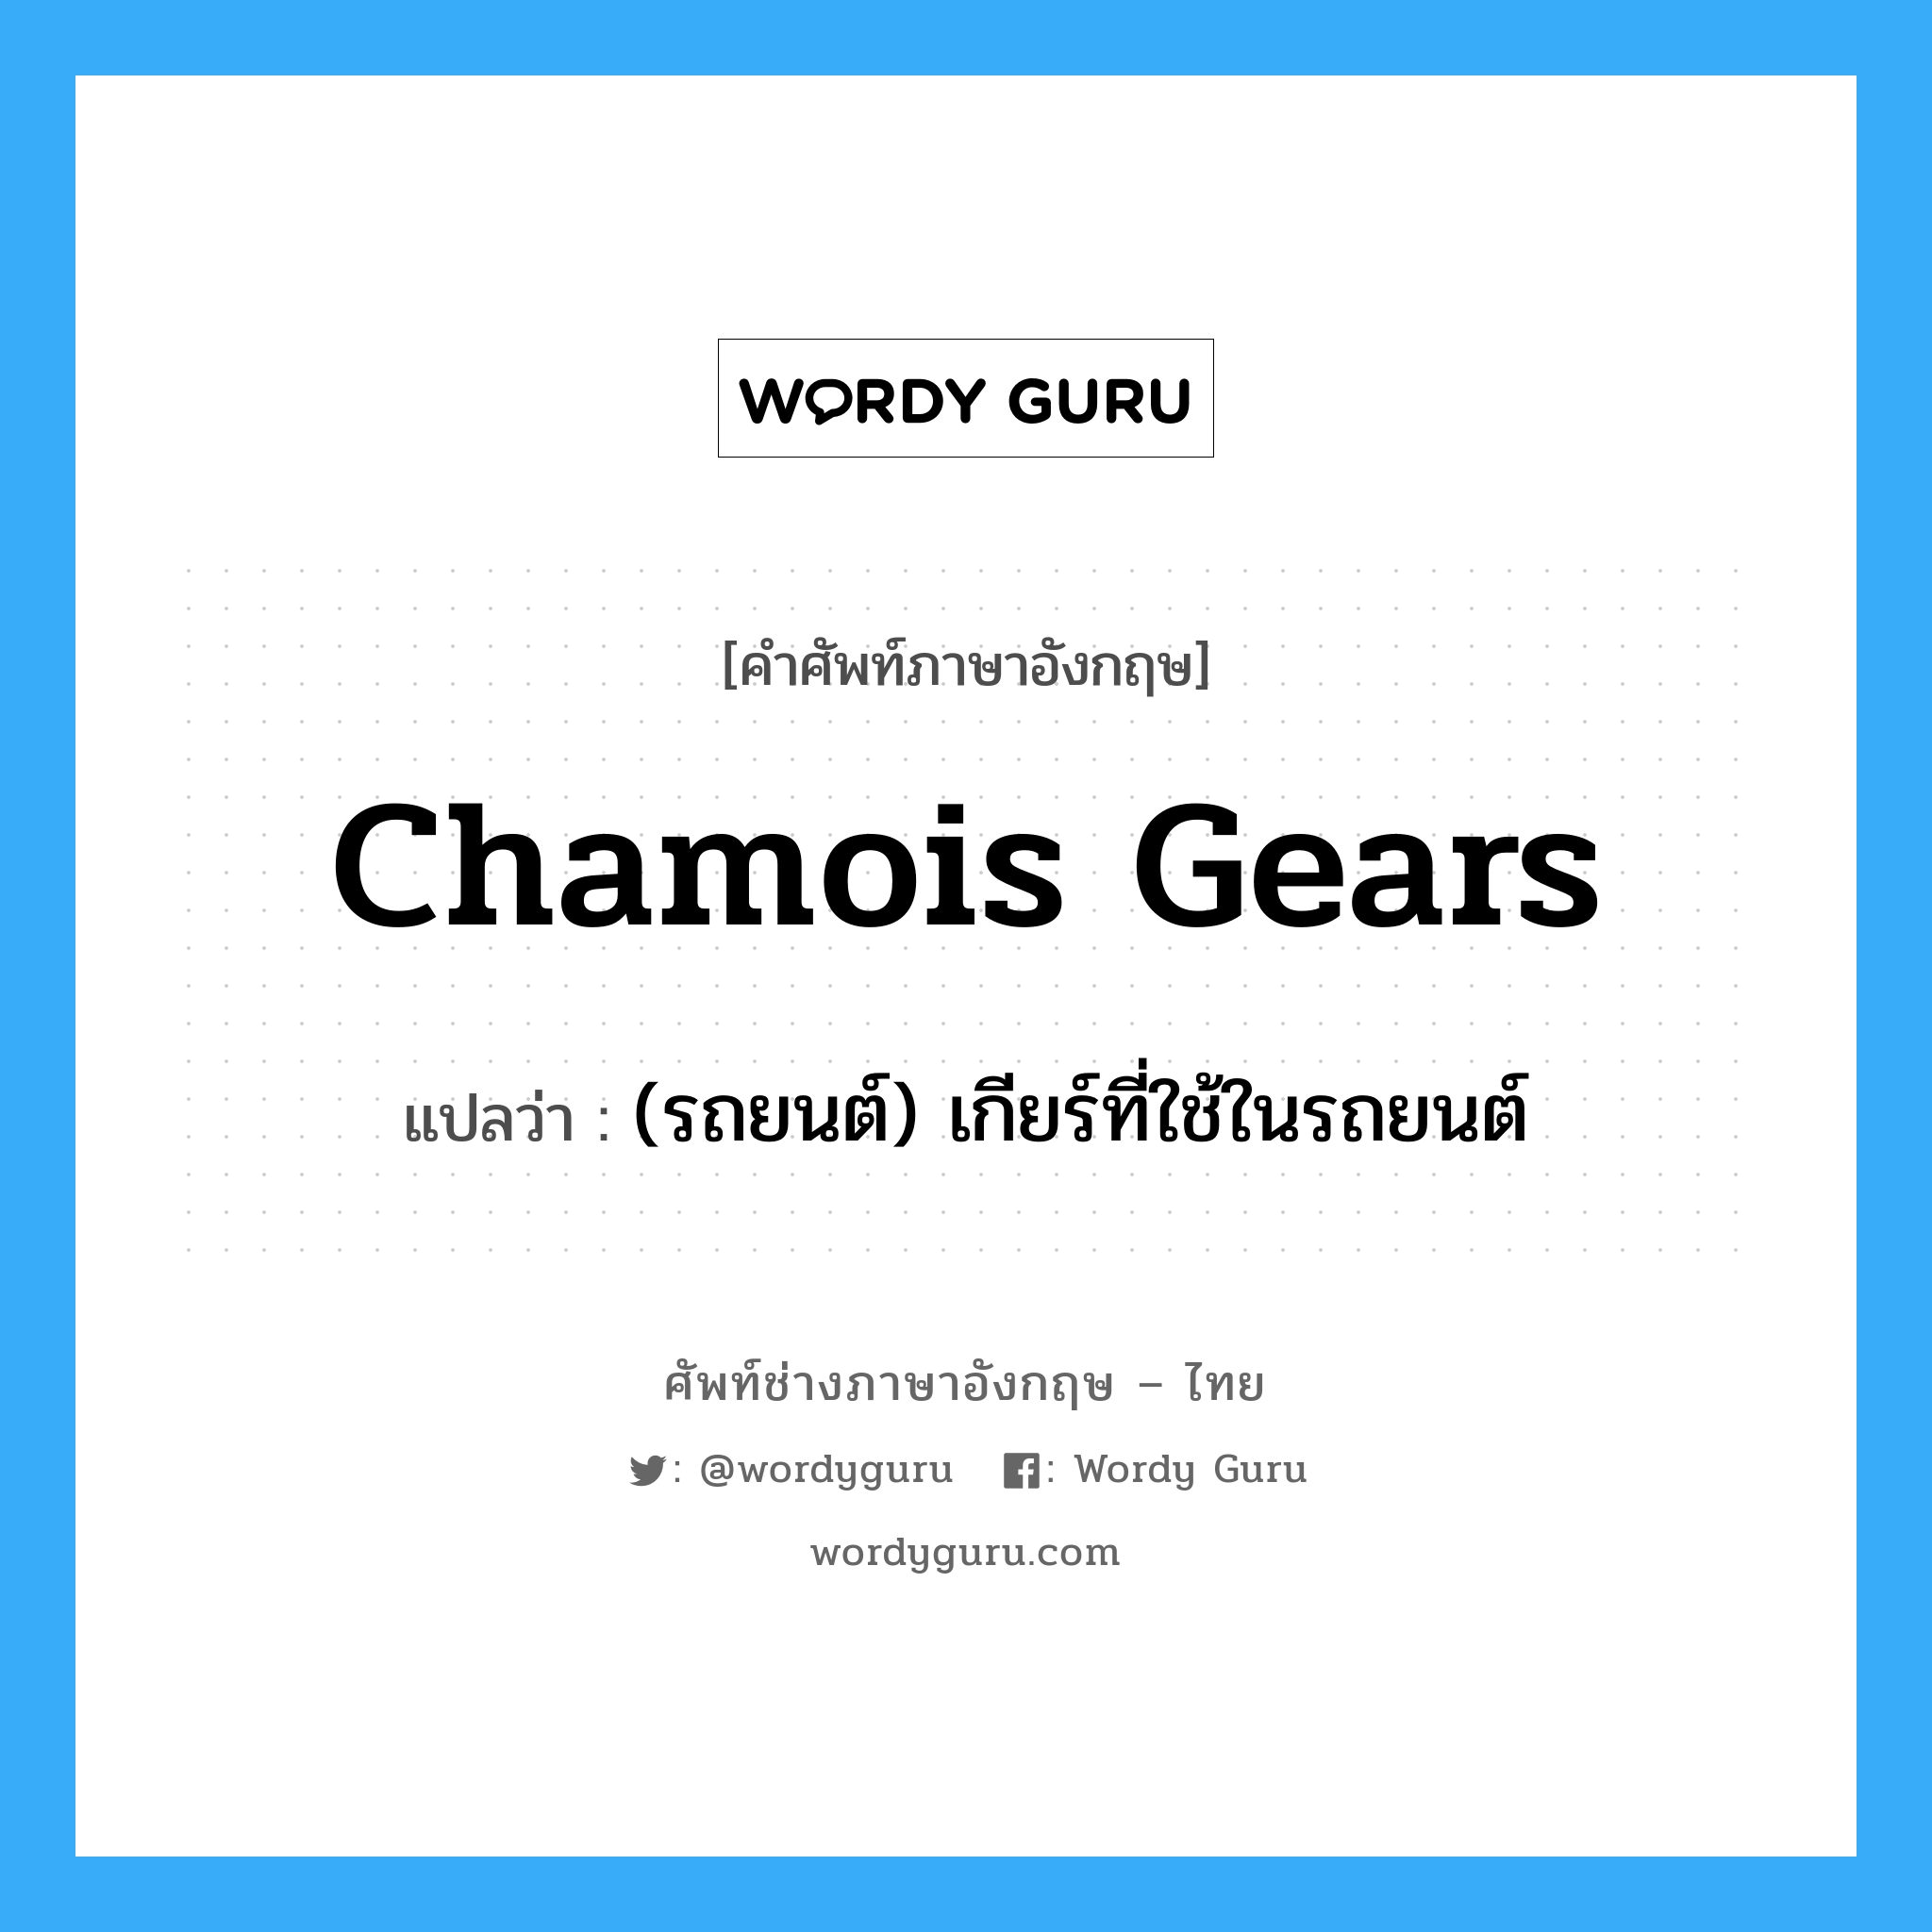 (รถยนต์) เกียร์ที่ใช้ในรถยนต์ ภาษาอังกฤษ?, คำศัพท์ช่างภาษาอังกฤษ - ไทย (รถยนต์) เกียร์ที่ใช้ในรถยนต์ คำศัพท์ภาษาอังกฤษ (รถยนต์) เกียร์ที่ใช้ในรถยนต์ แปลว่า chamois gears